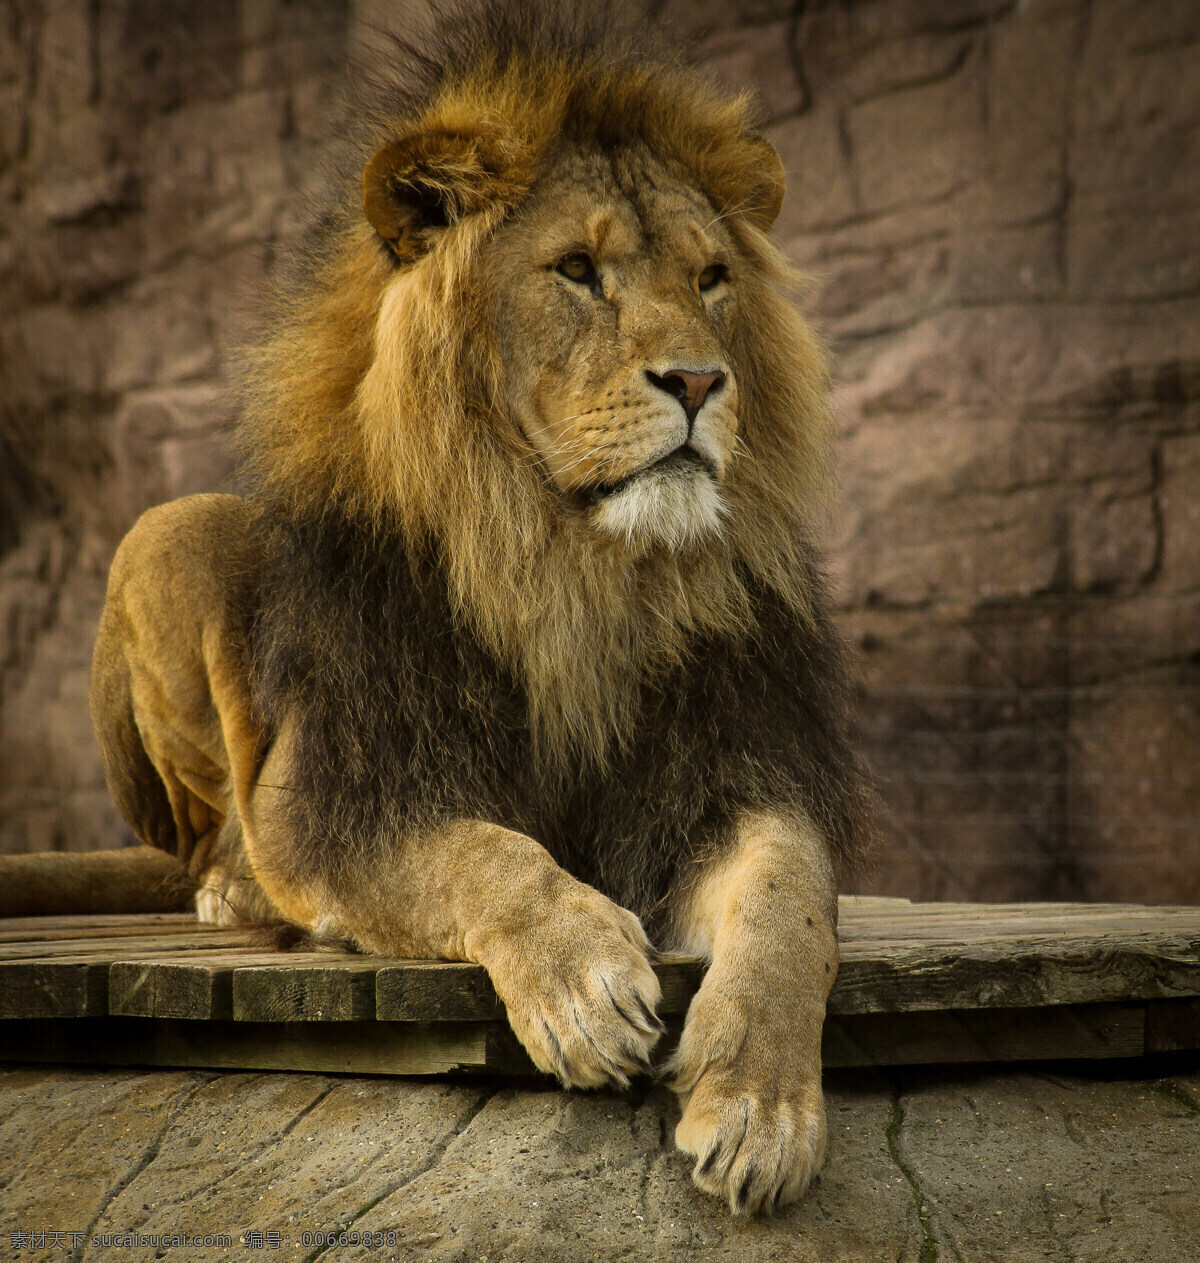 狮子 美洲狮 狮虎 狮 雄狮 狮子王 生物世界 野生动物